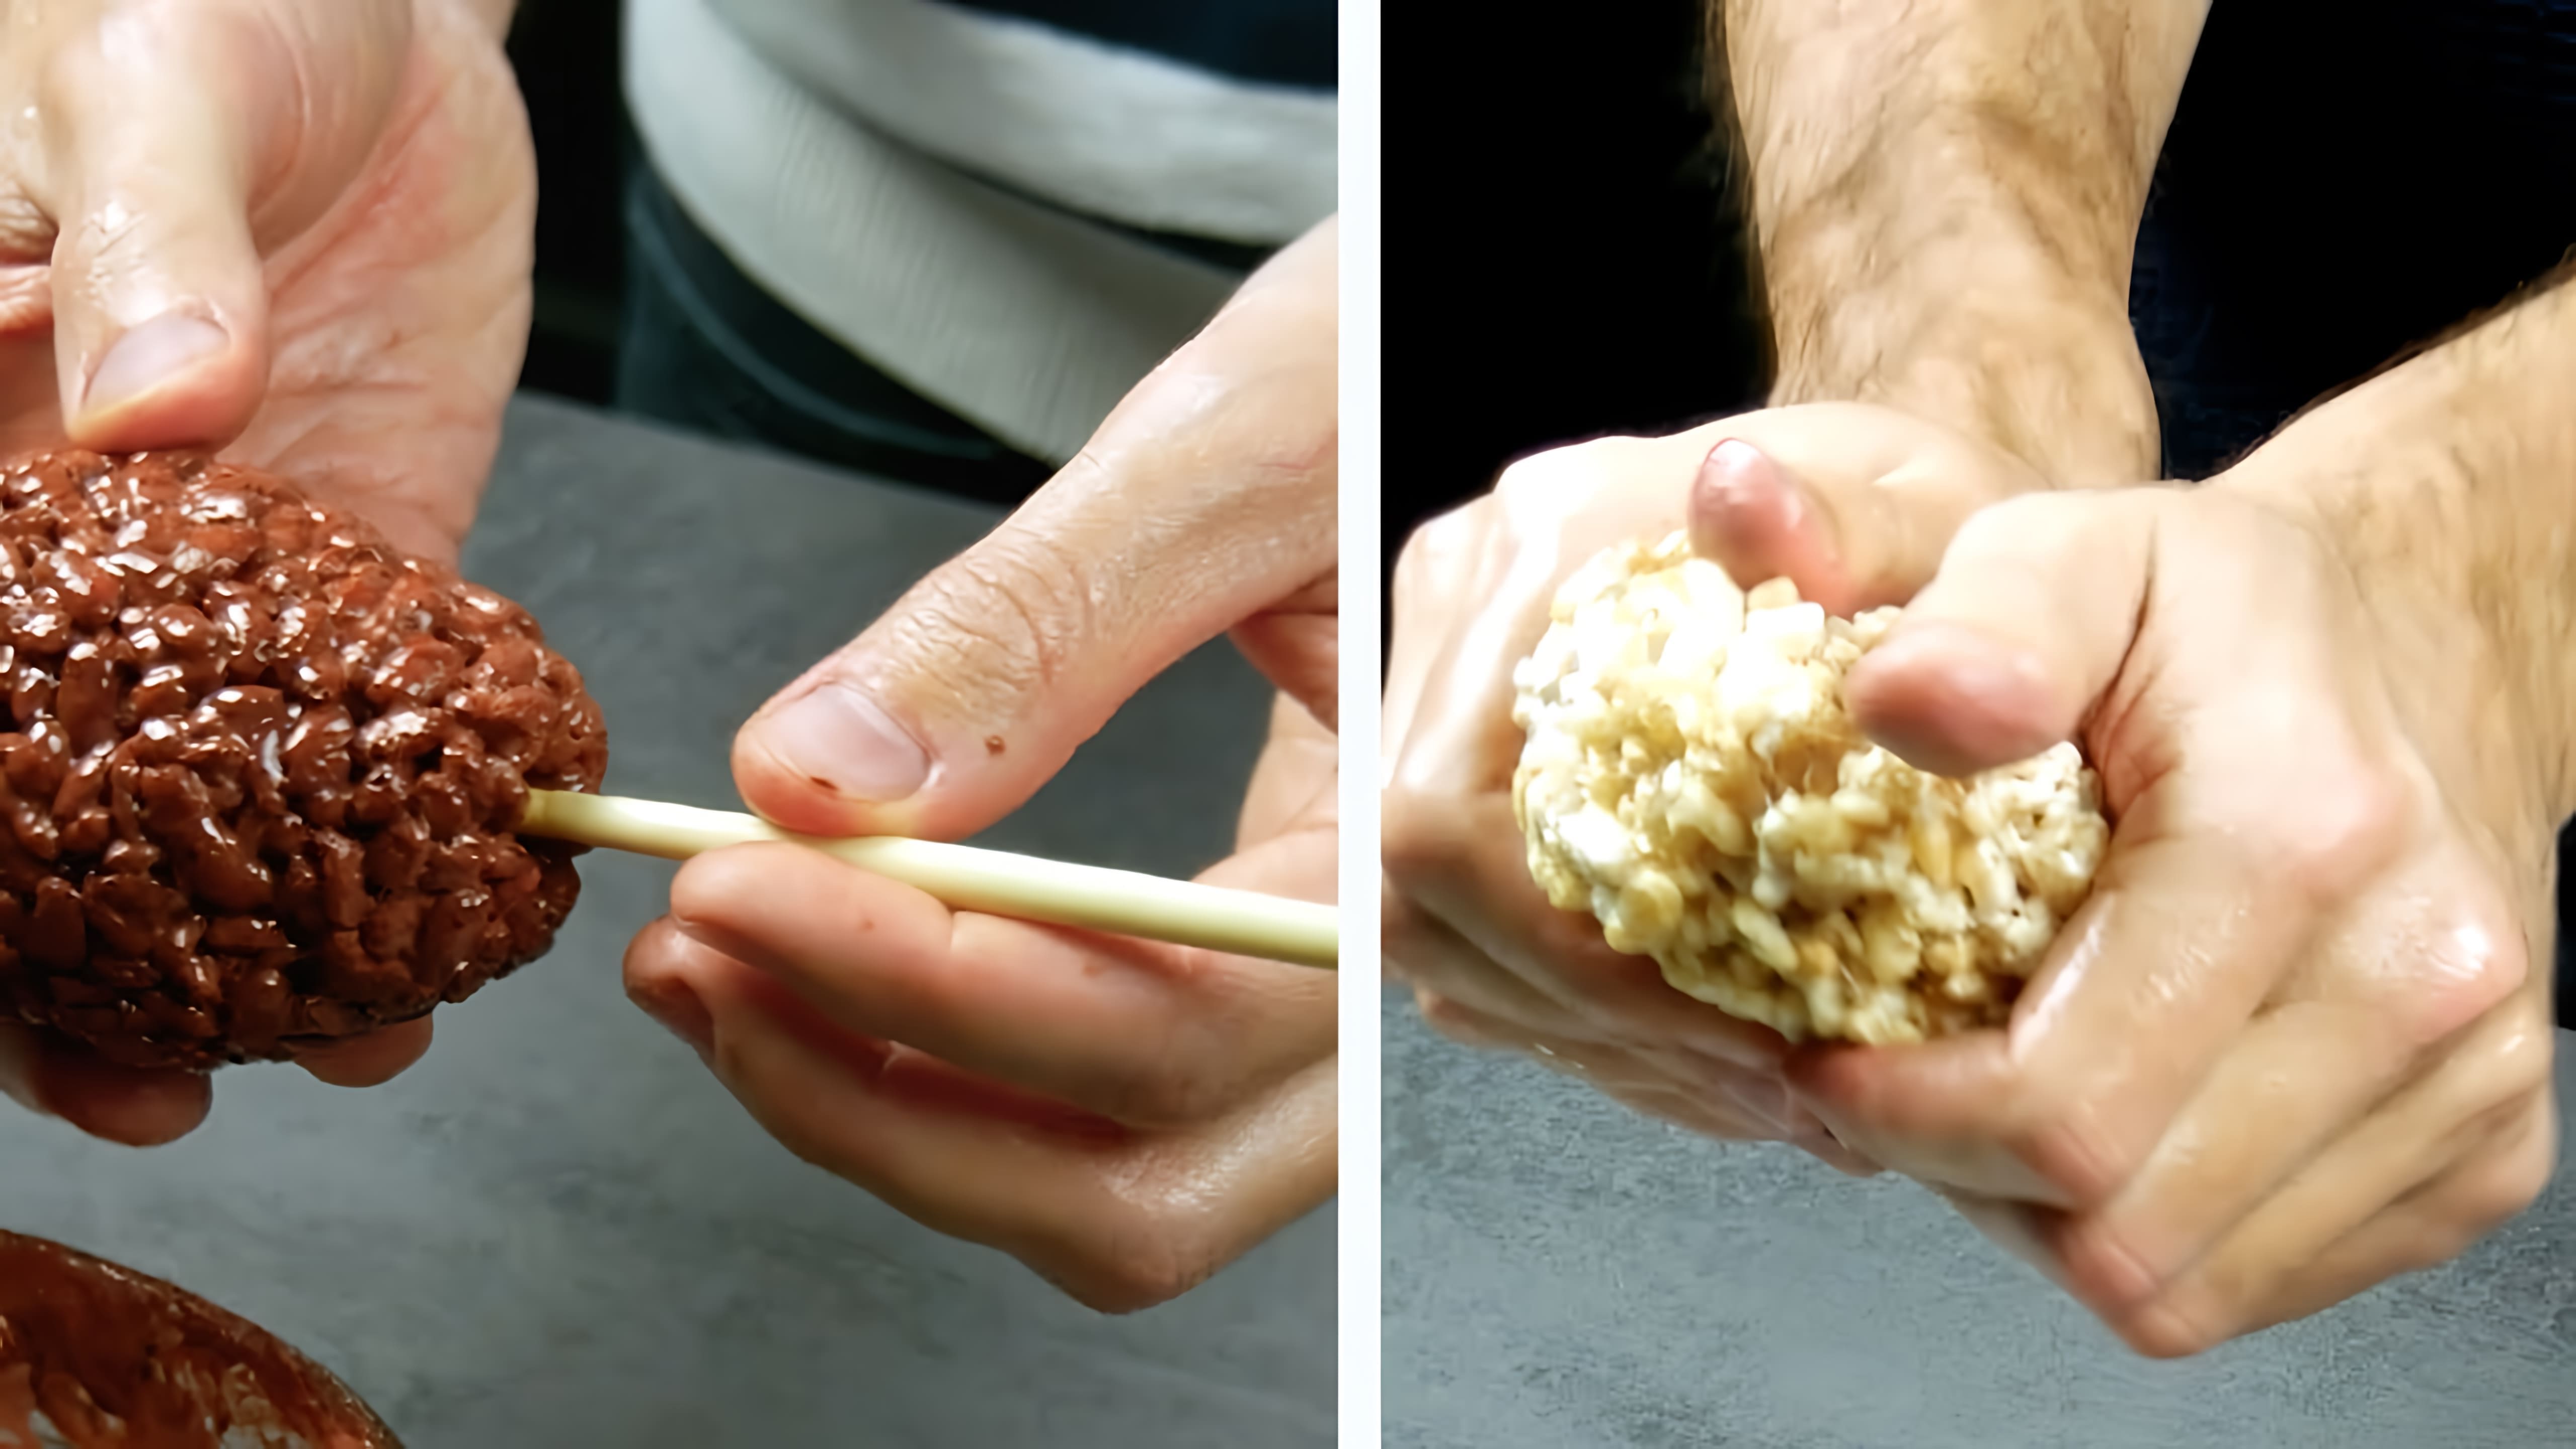 В этом видео-ролике показан сладкий трюк с воздушным рисом, который приведет всех в восторг